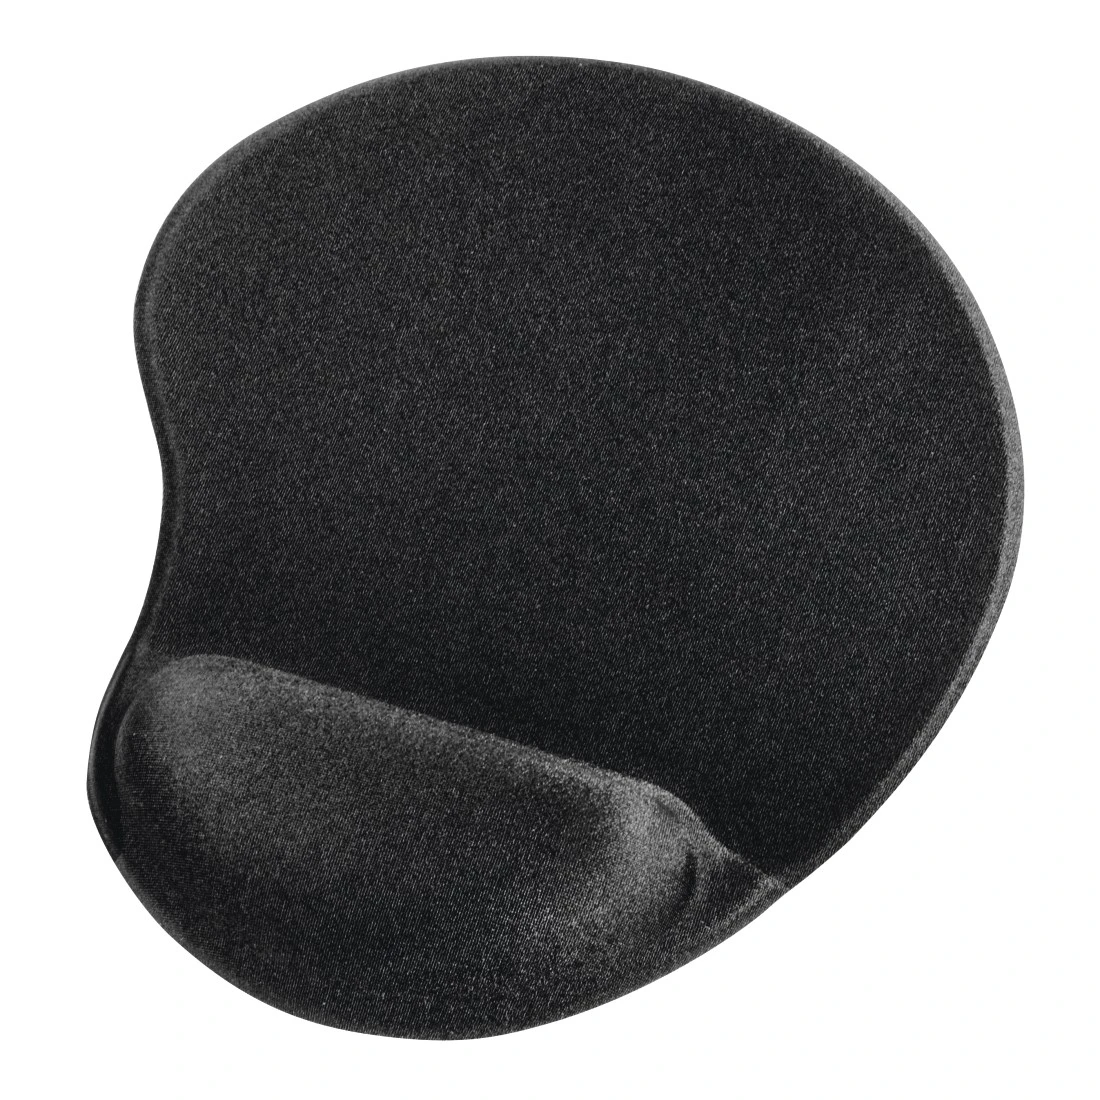 Tapis souris avec repose-poignet ergonomique noir/bleu